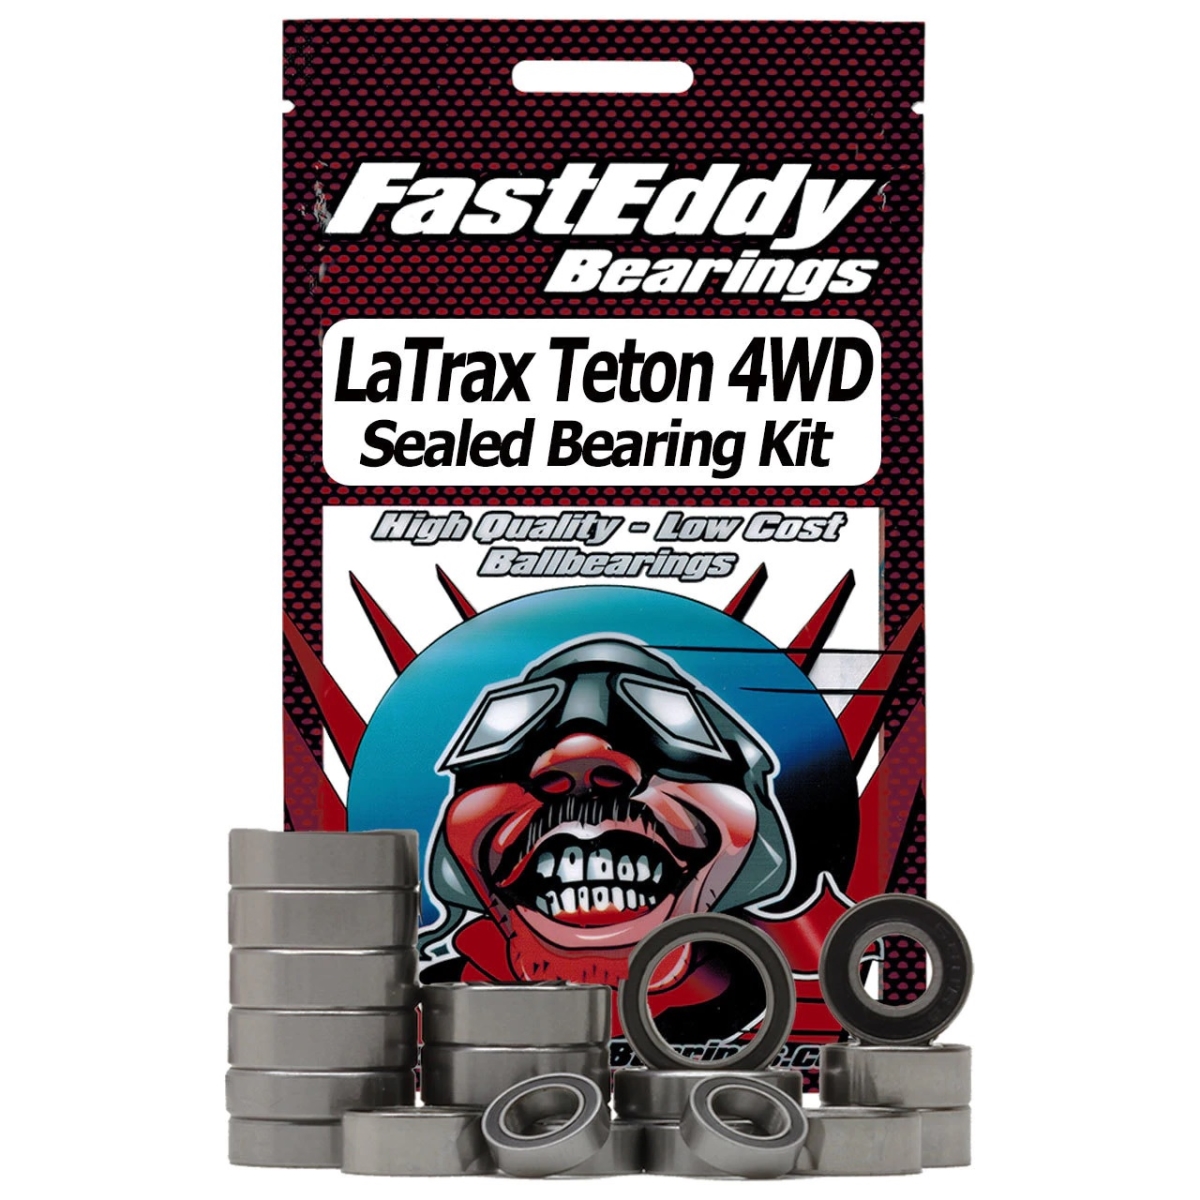 TFE2474 Traxxas LaTrax Teton 4WD 1-18th Sealed Bearing Kit -  FastEddy Bearings